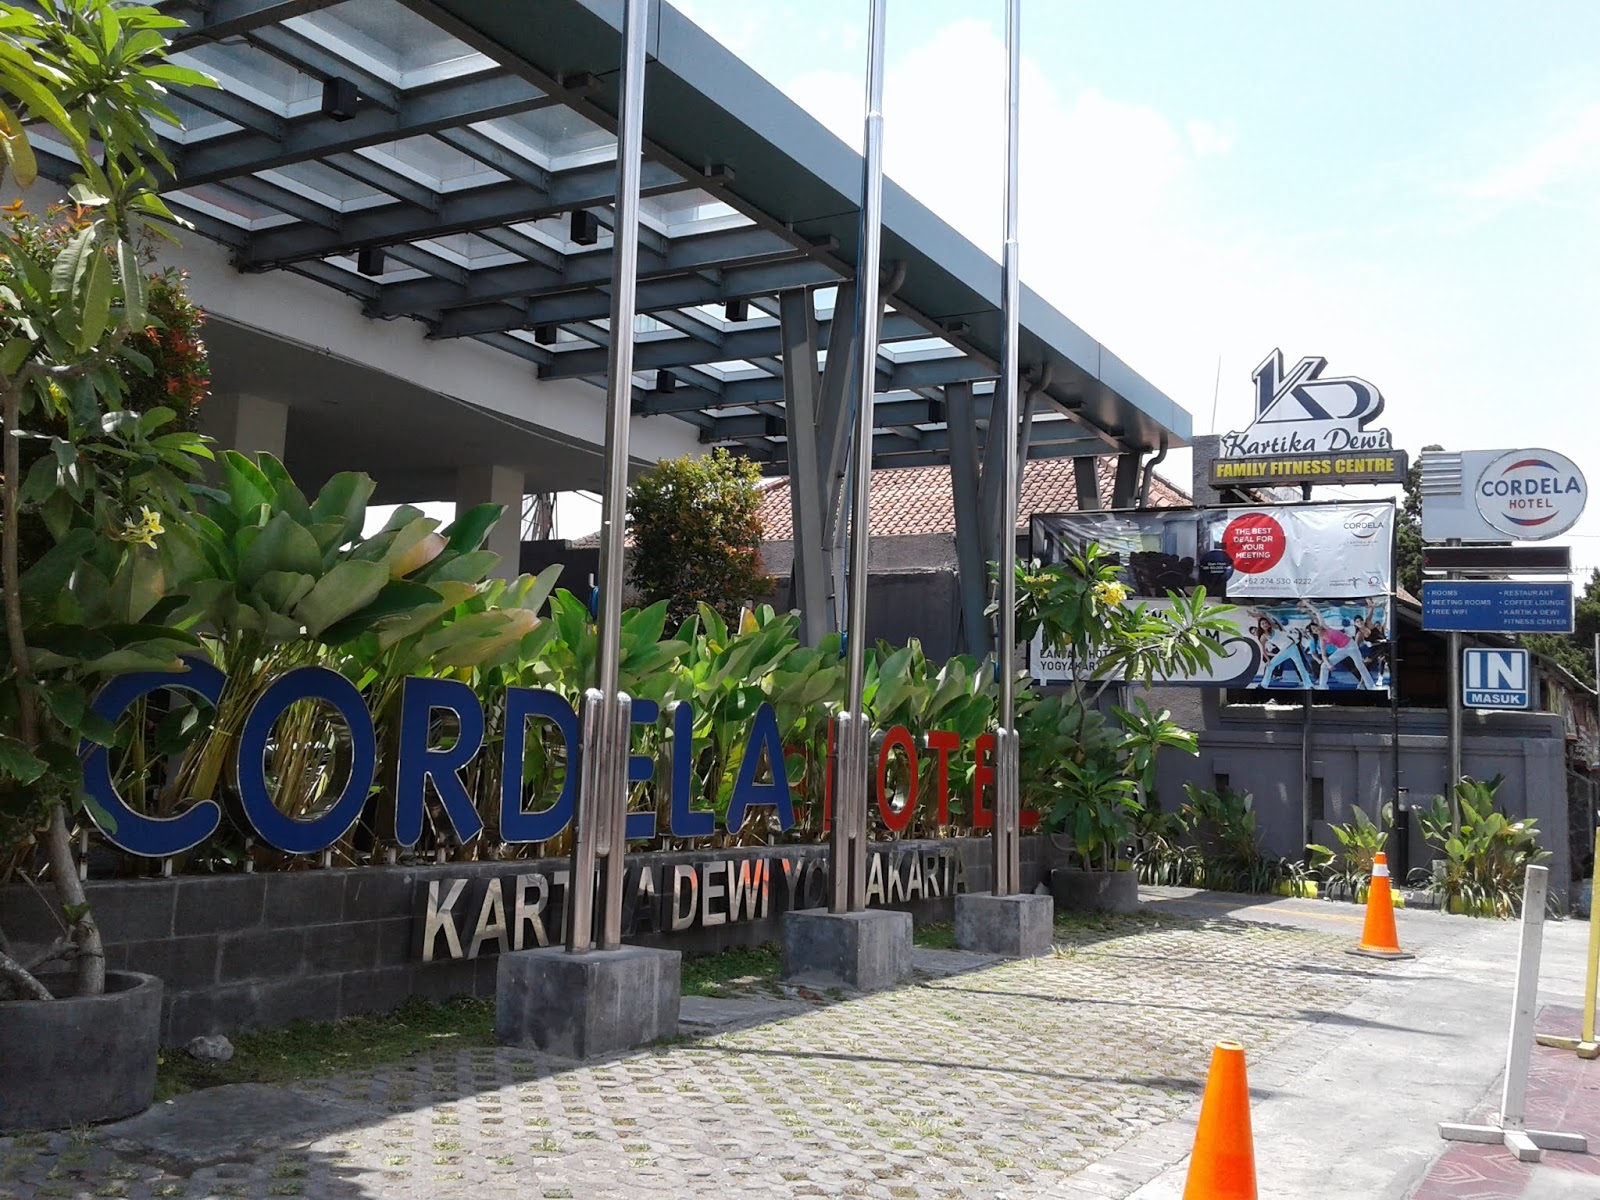 Hotel Cordela Kartika Dewi Yogyakarta